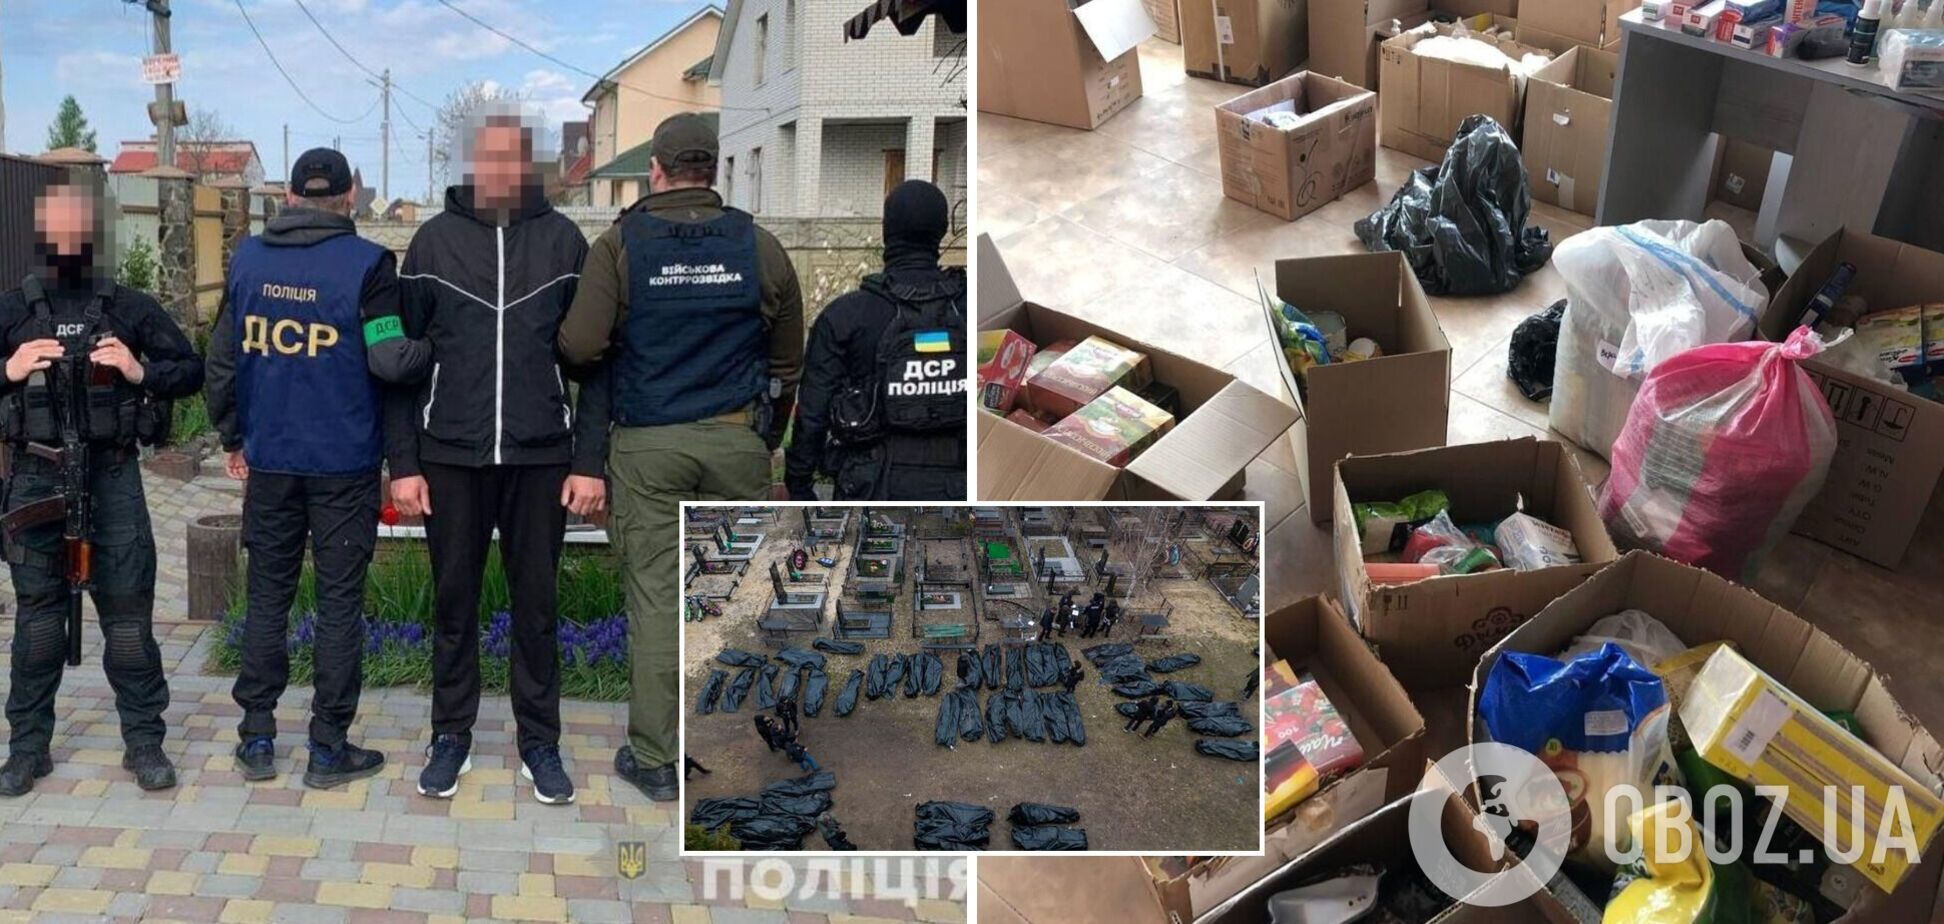 Правоохранители в Киевской области получили доказательства сотрудничества местного жителя с оккупантами